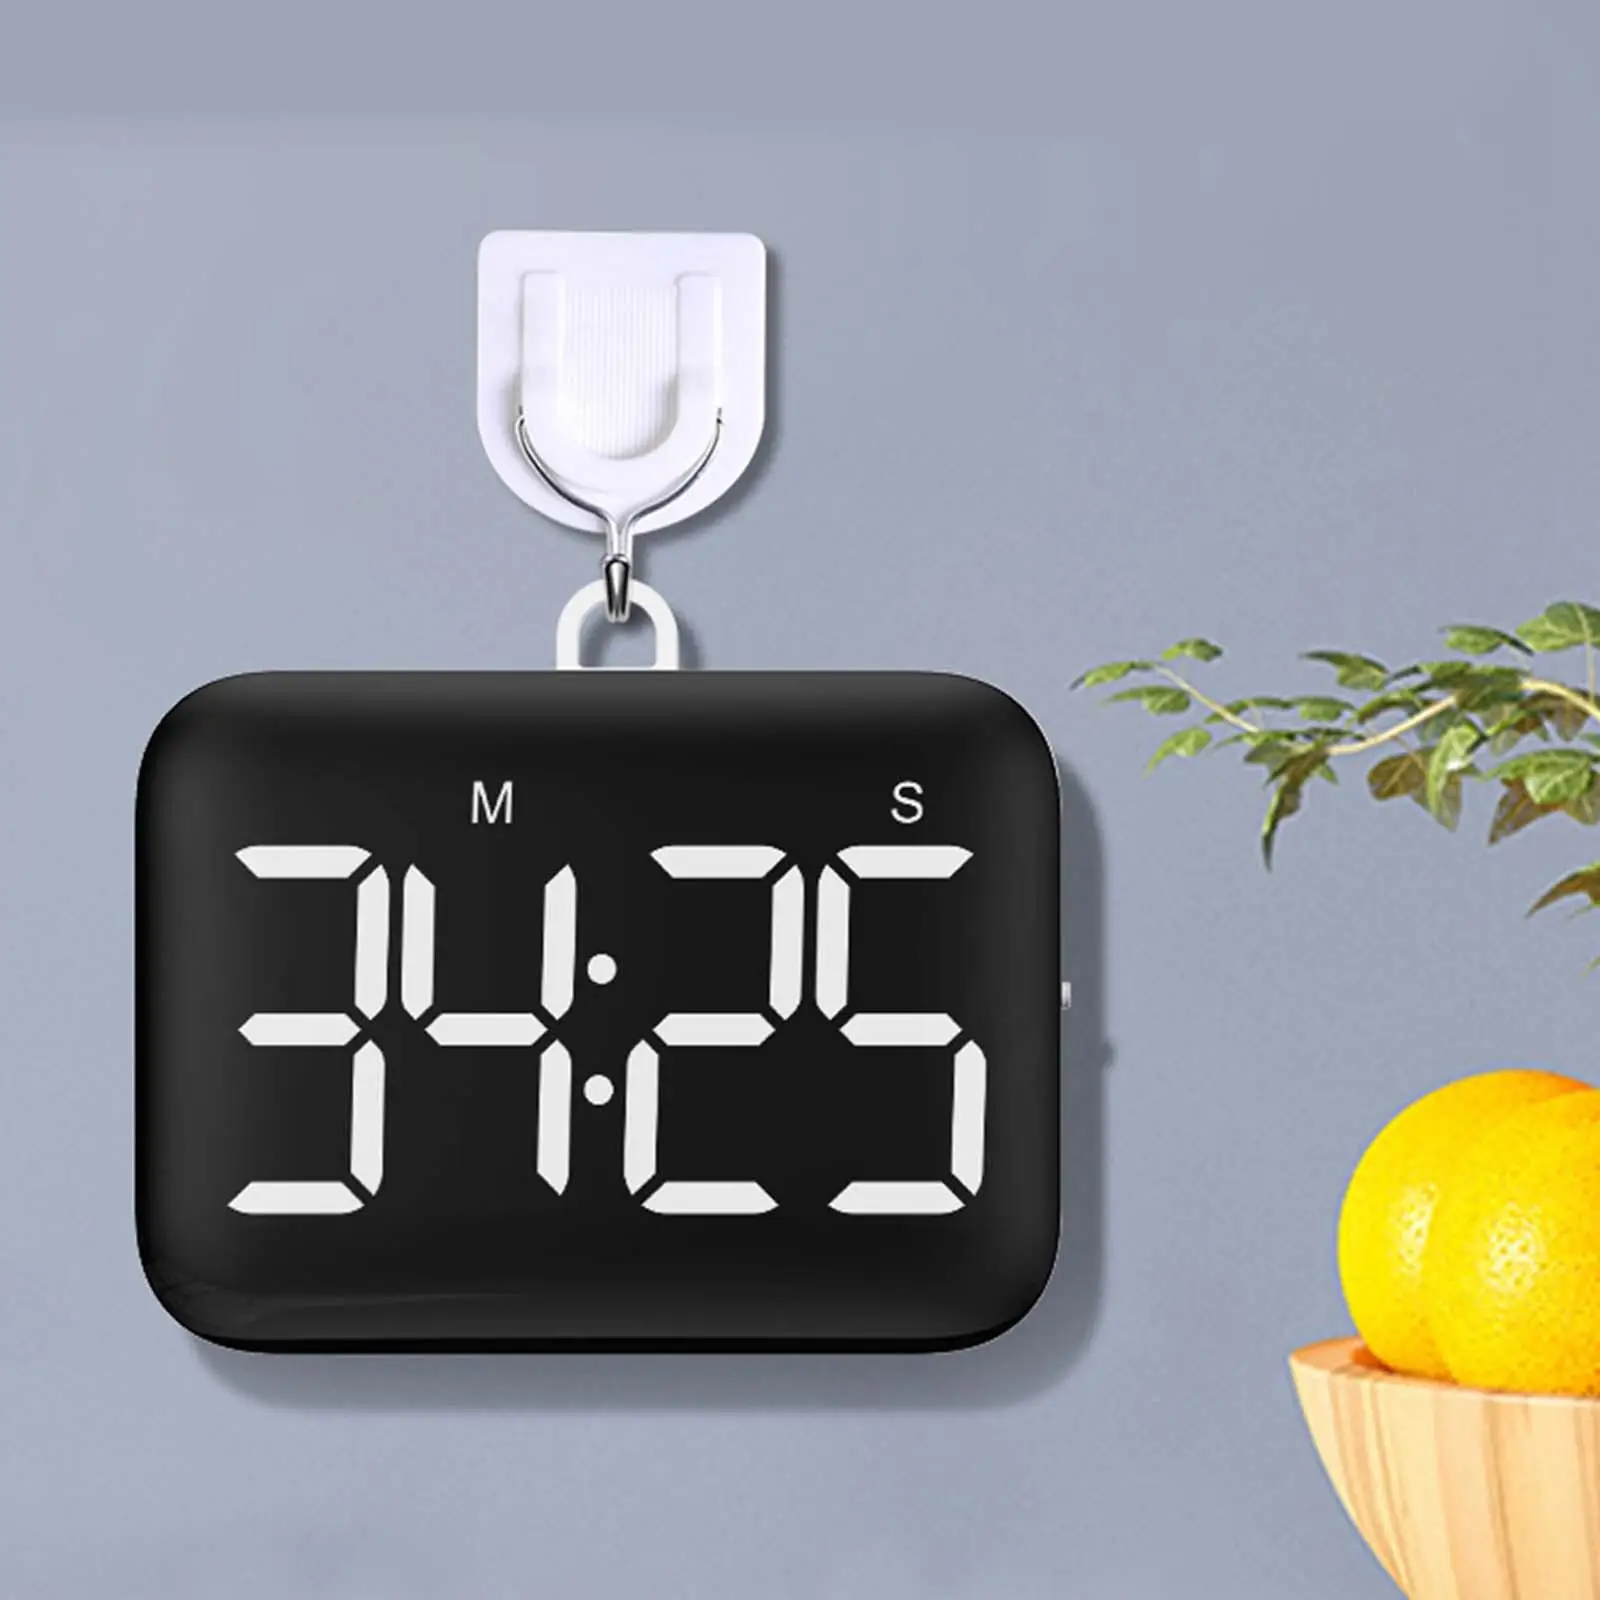 Magnetic Digital Kitchen Timer 3 Level Volume Fitness Cooking Alarm